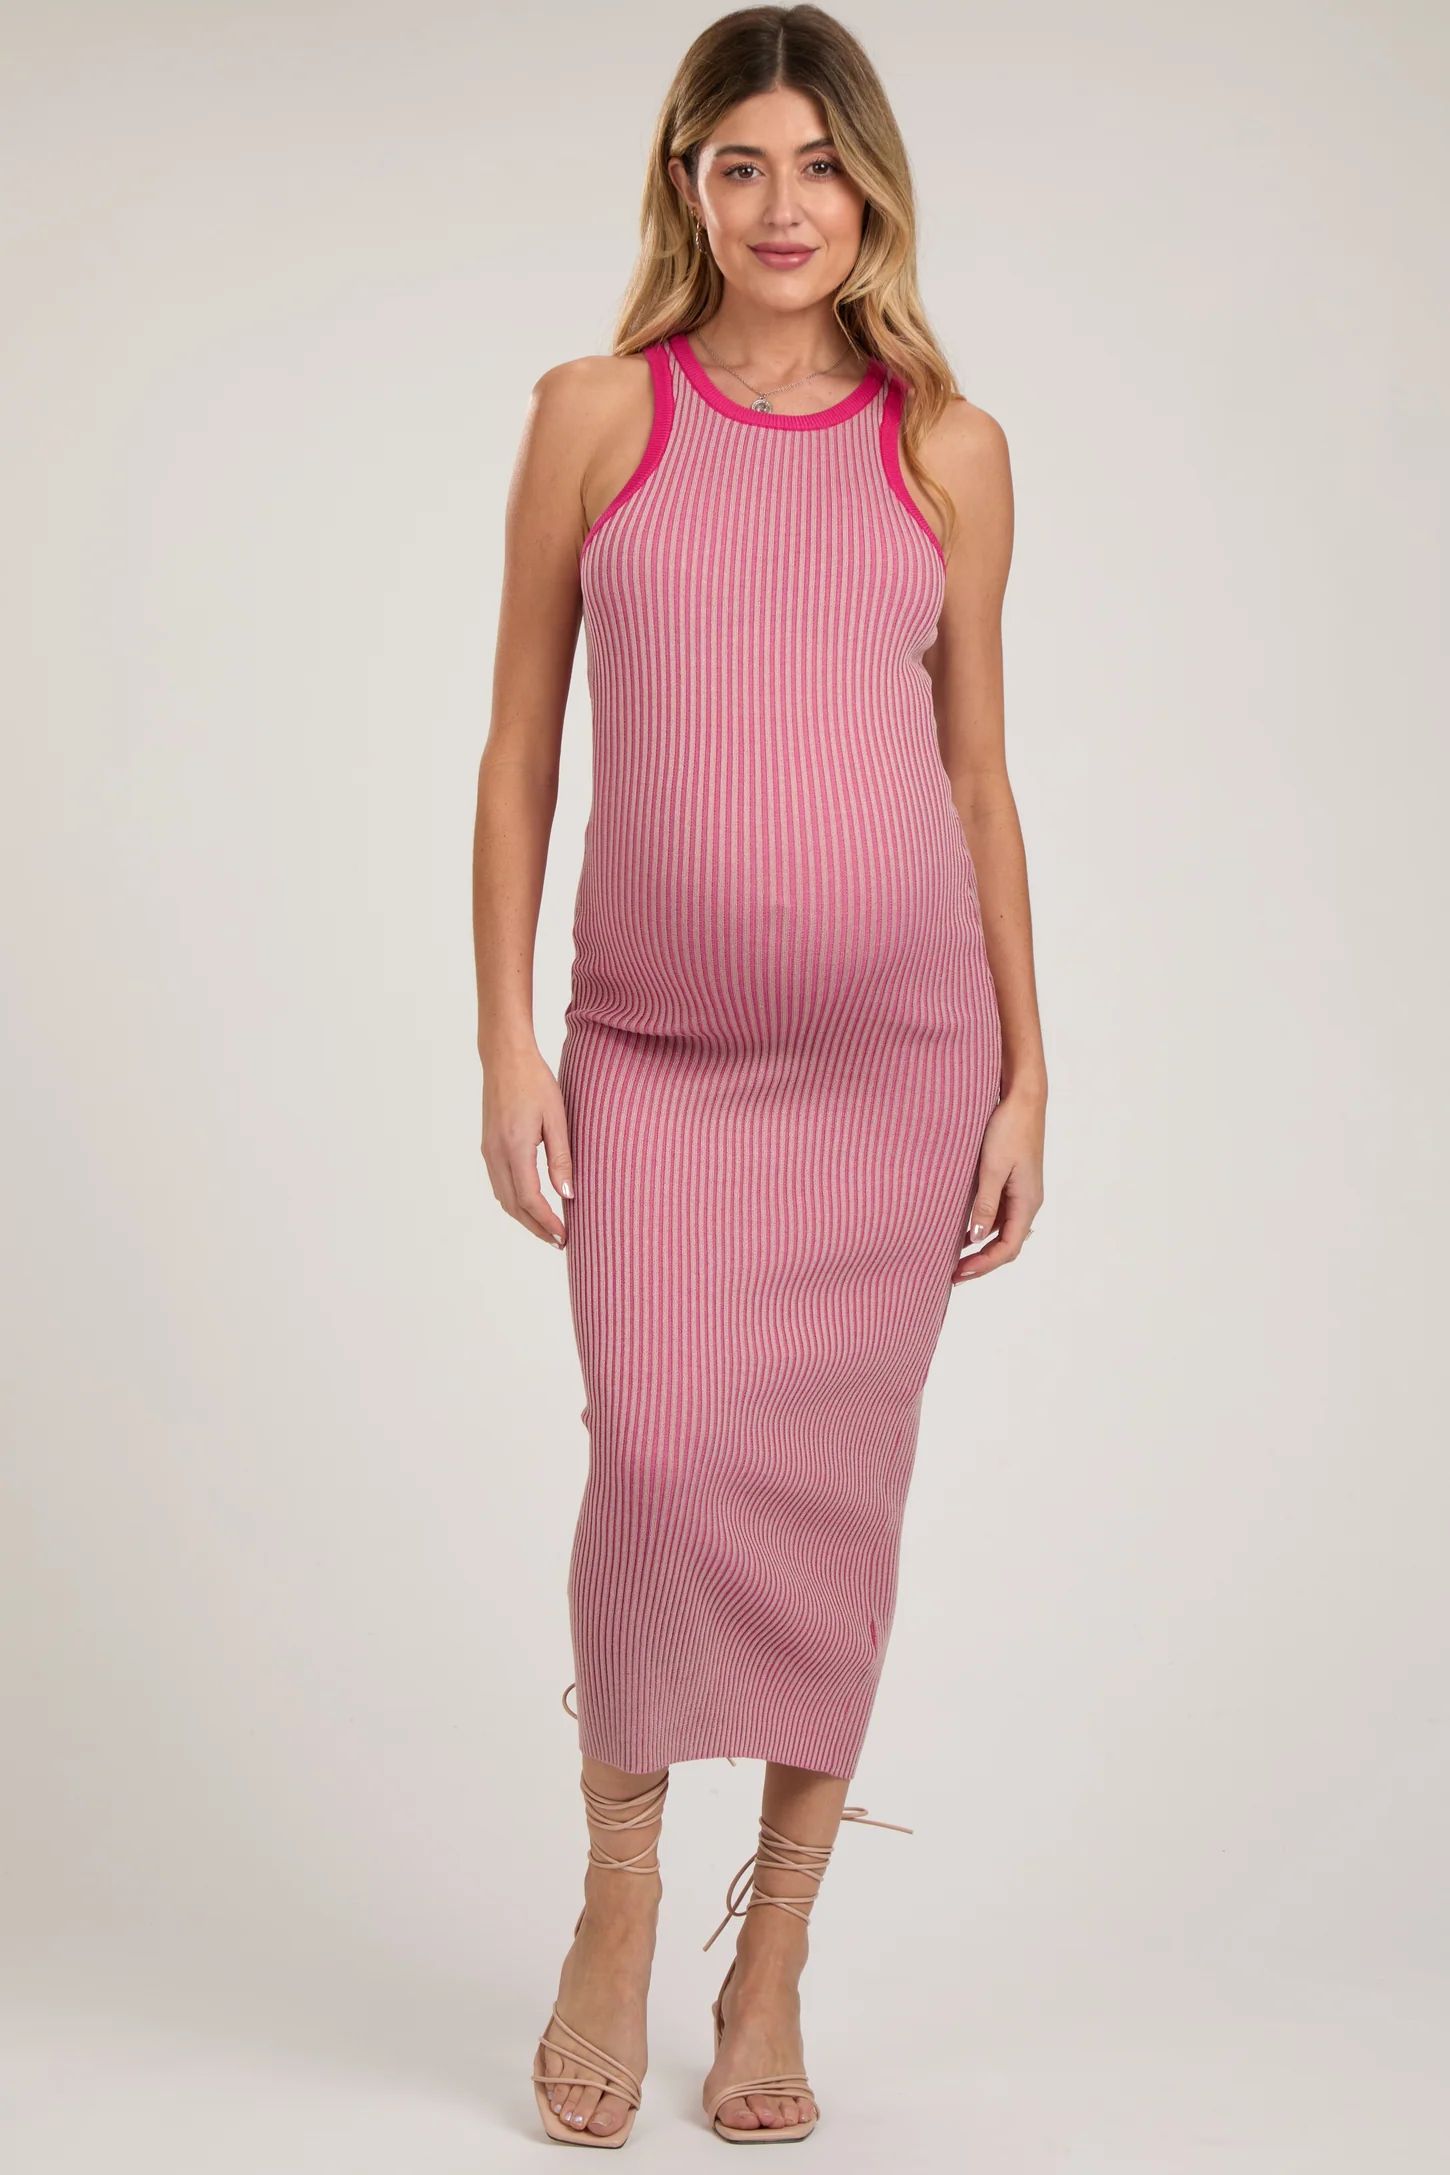 Pink Ribbed Knit Sleeveless Fitted Maternity Midi Dress | PinkBlush Maternity